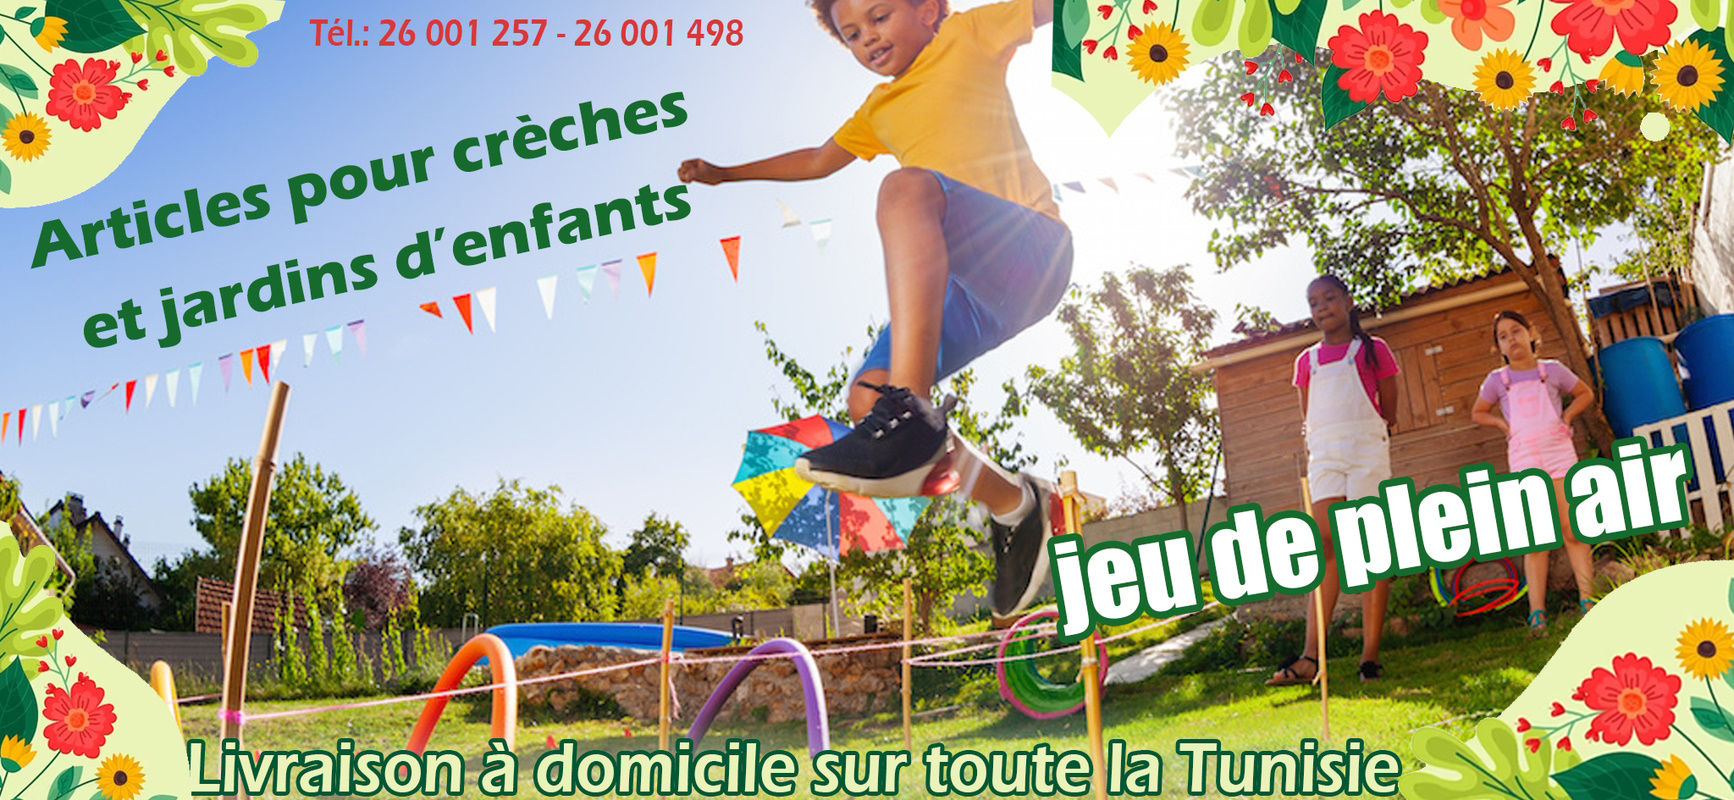 Magasin de jouets en ligne - Livraison sur toute la Tunisie -  ABRACADABRA-Achetez MON IMAGIER BILINGUE MES ENDROITS chez ABRACADABRA à  199,000 DT